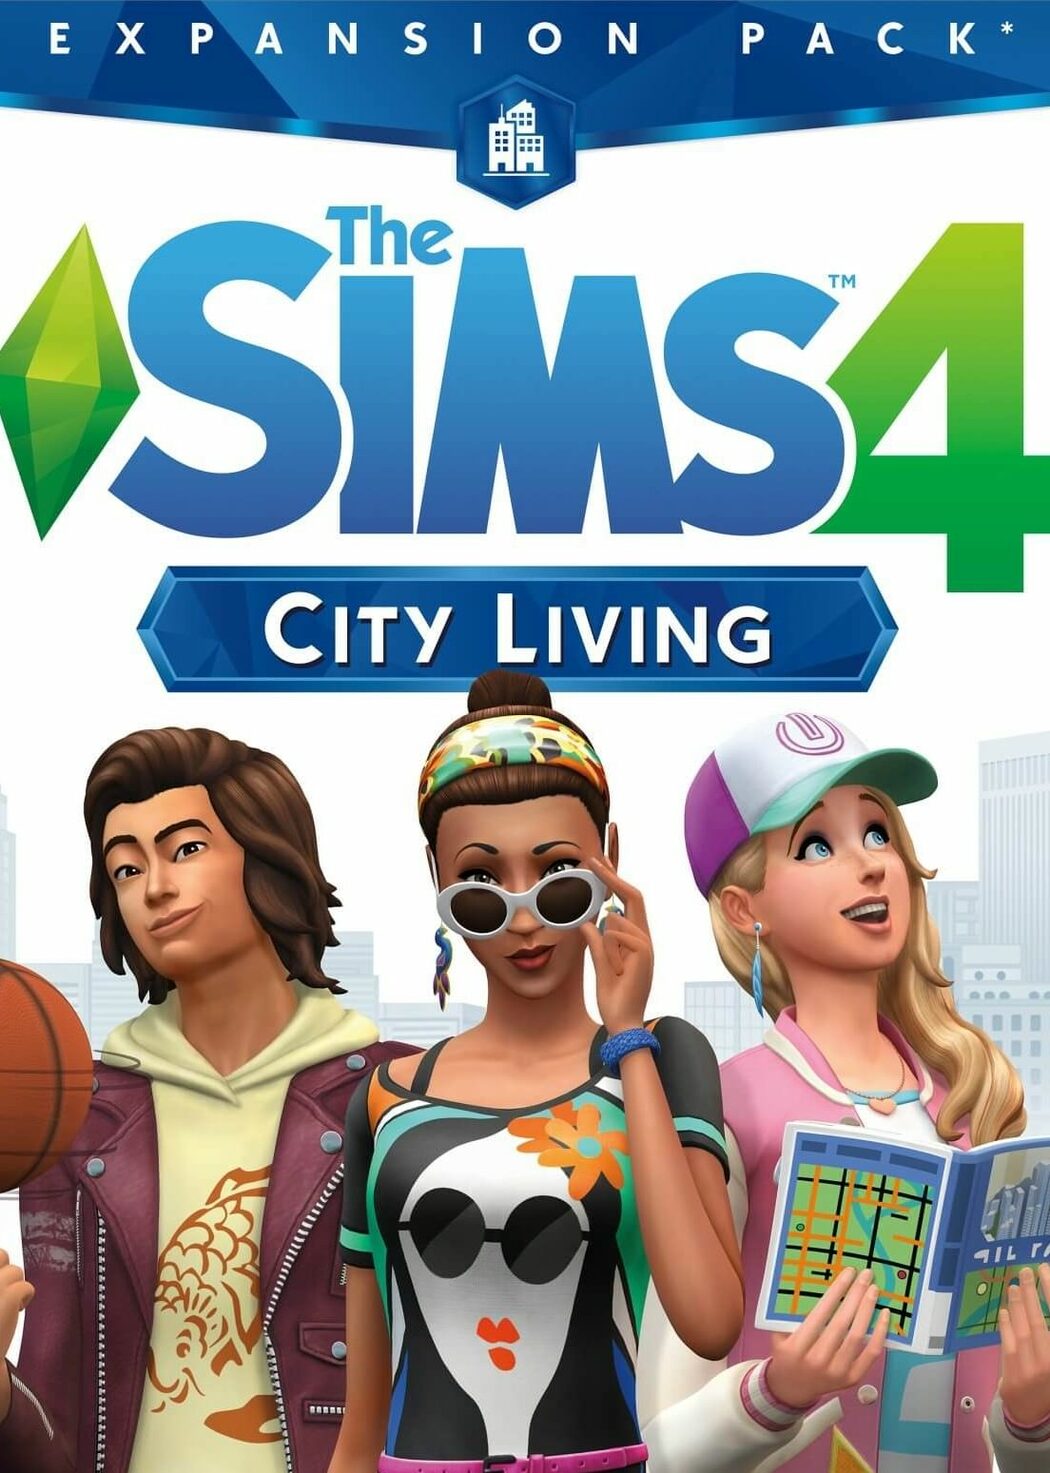 Buy The Sims 4: Island Living DLC Origin Digital Code Global